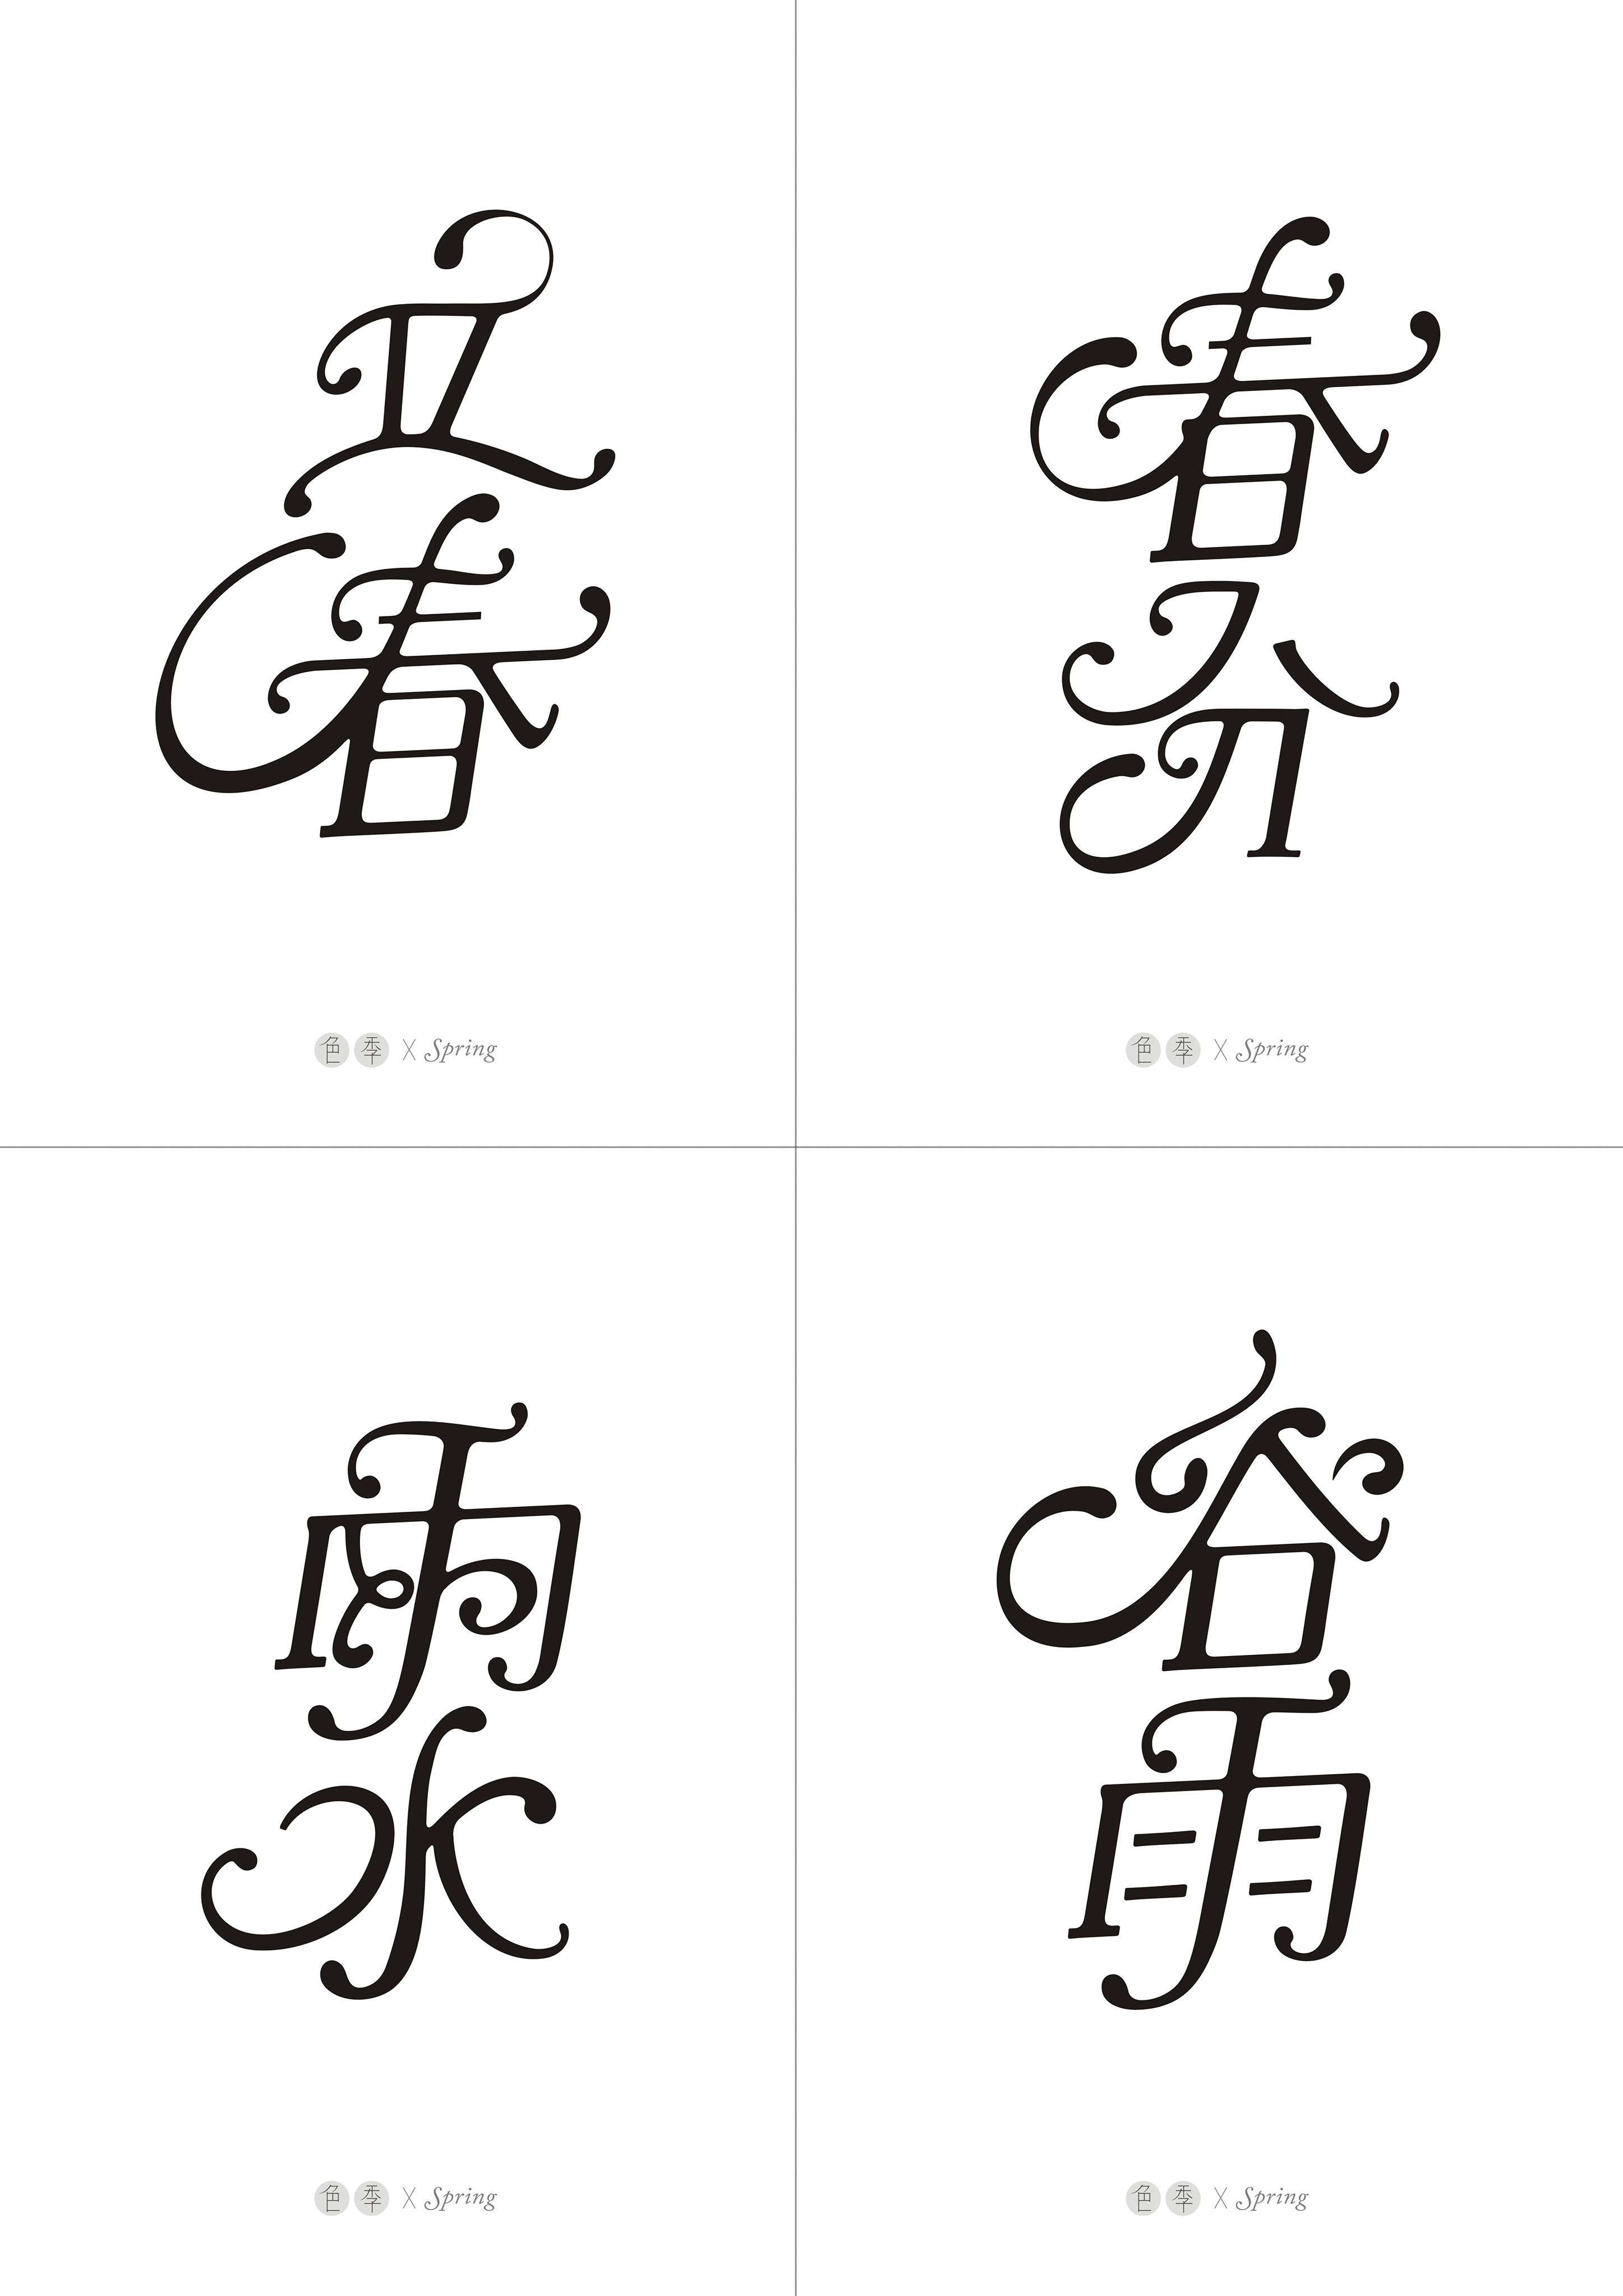 英文花体笔画与汉字结合尝试二十四节气字体设计